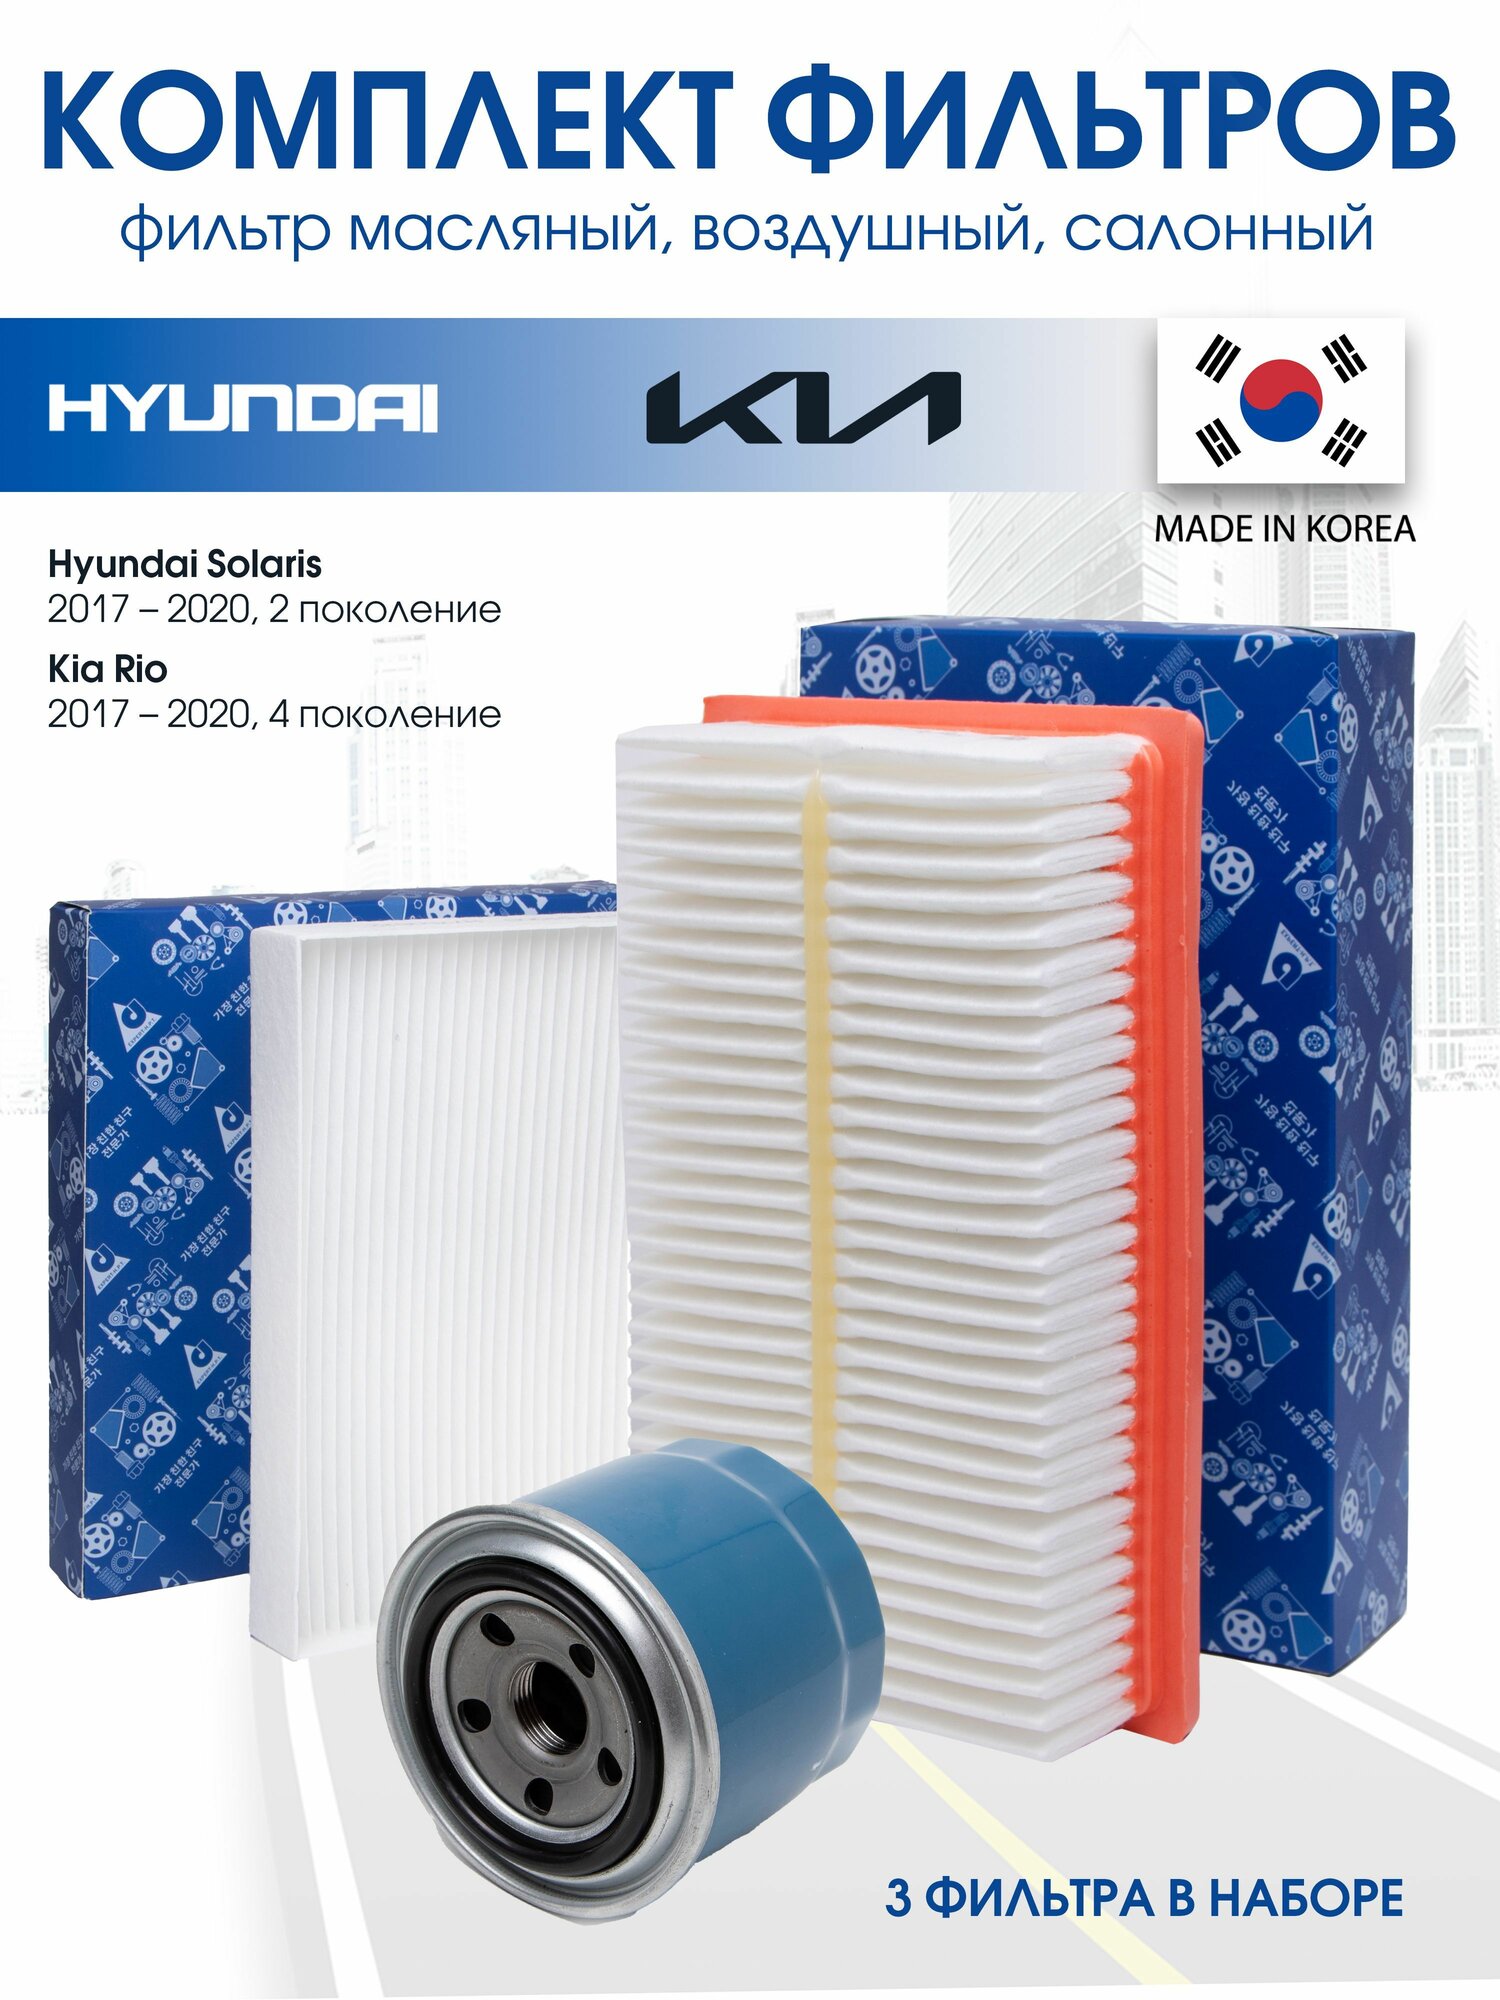 Комплект фильтров для ТО на Hyundai Solaris 2 поколения, Kia Rio 4 поколения двигателем 1.6, масляный, воздушный, салонный